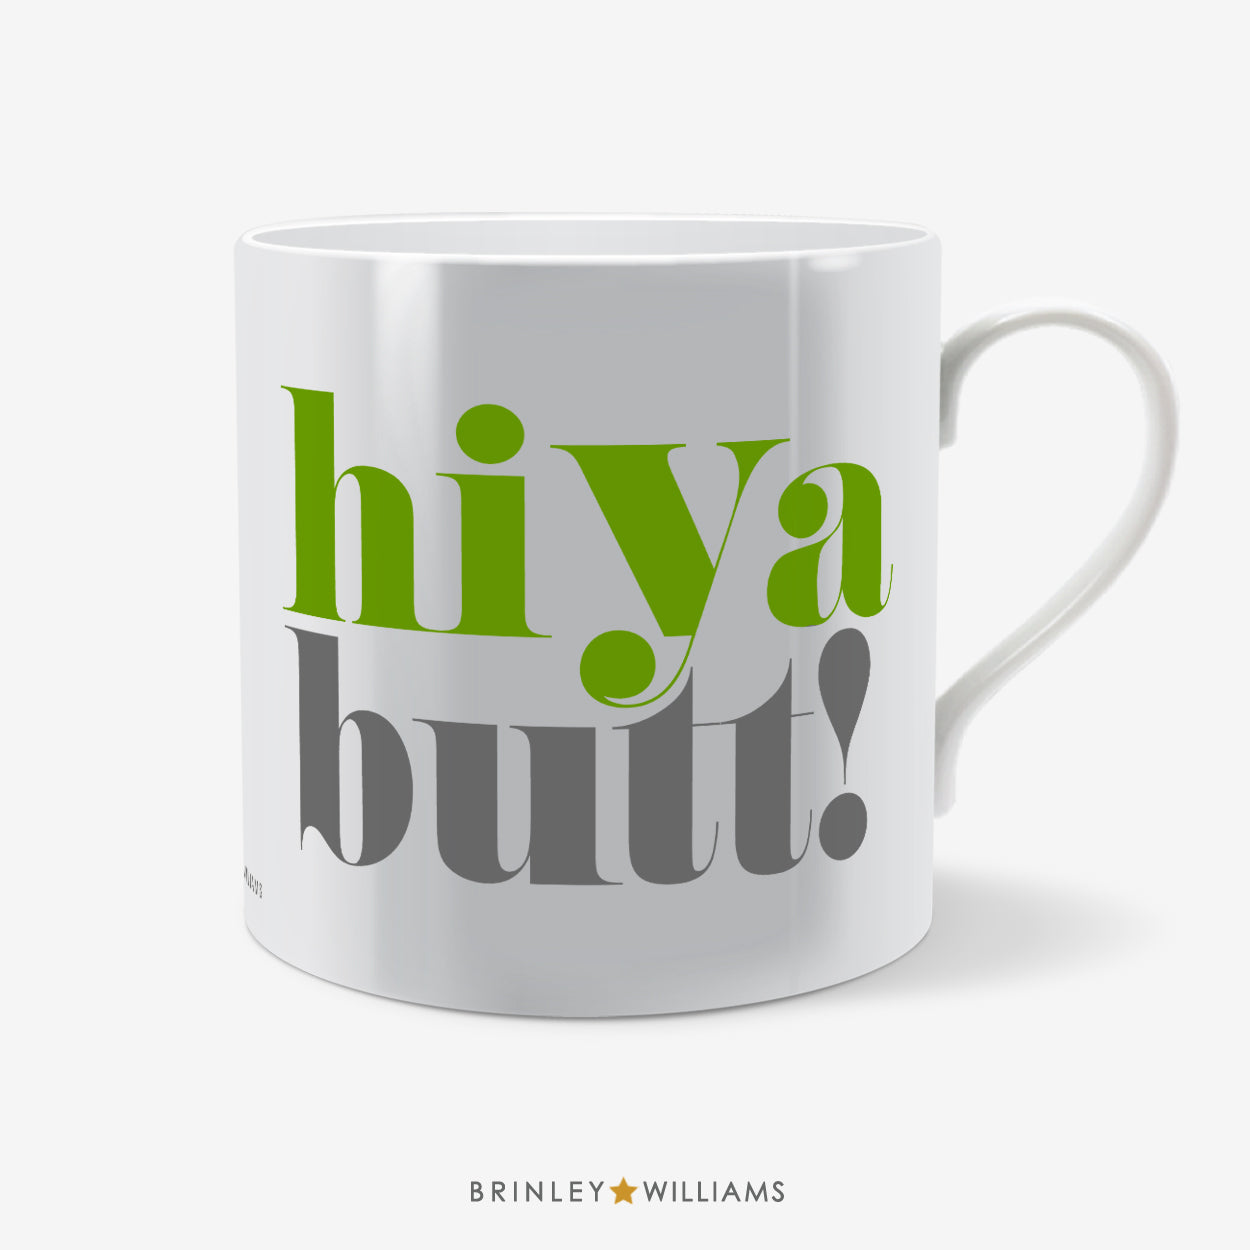 Hiya Butt Welsh Mug - Green